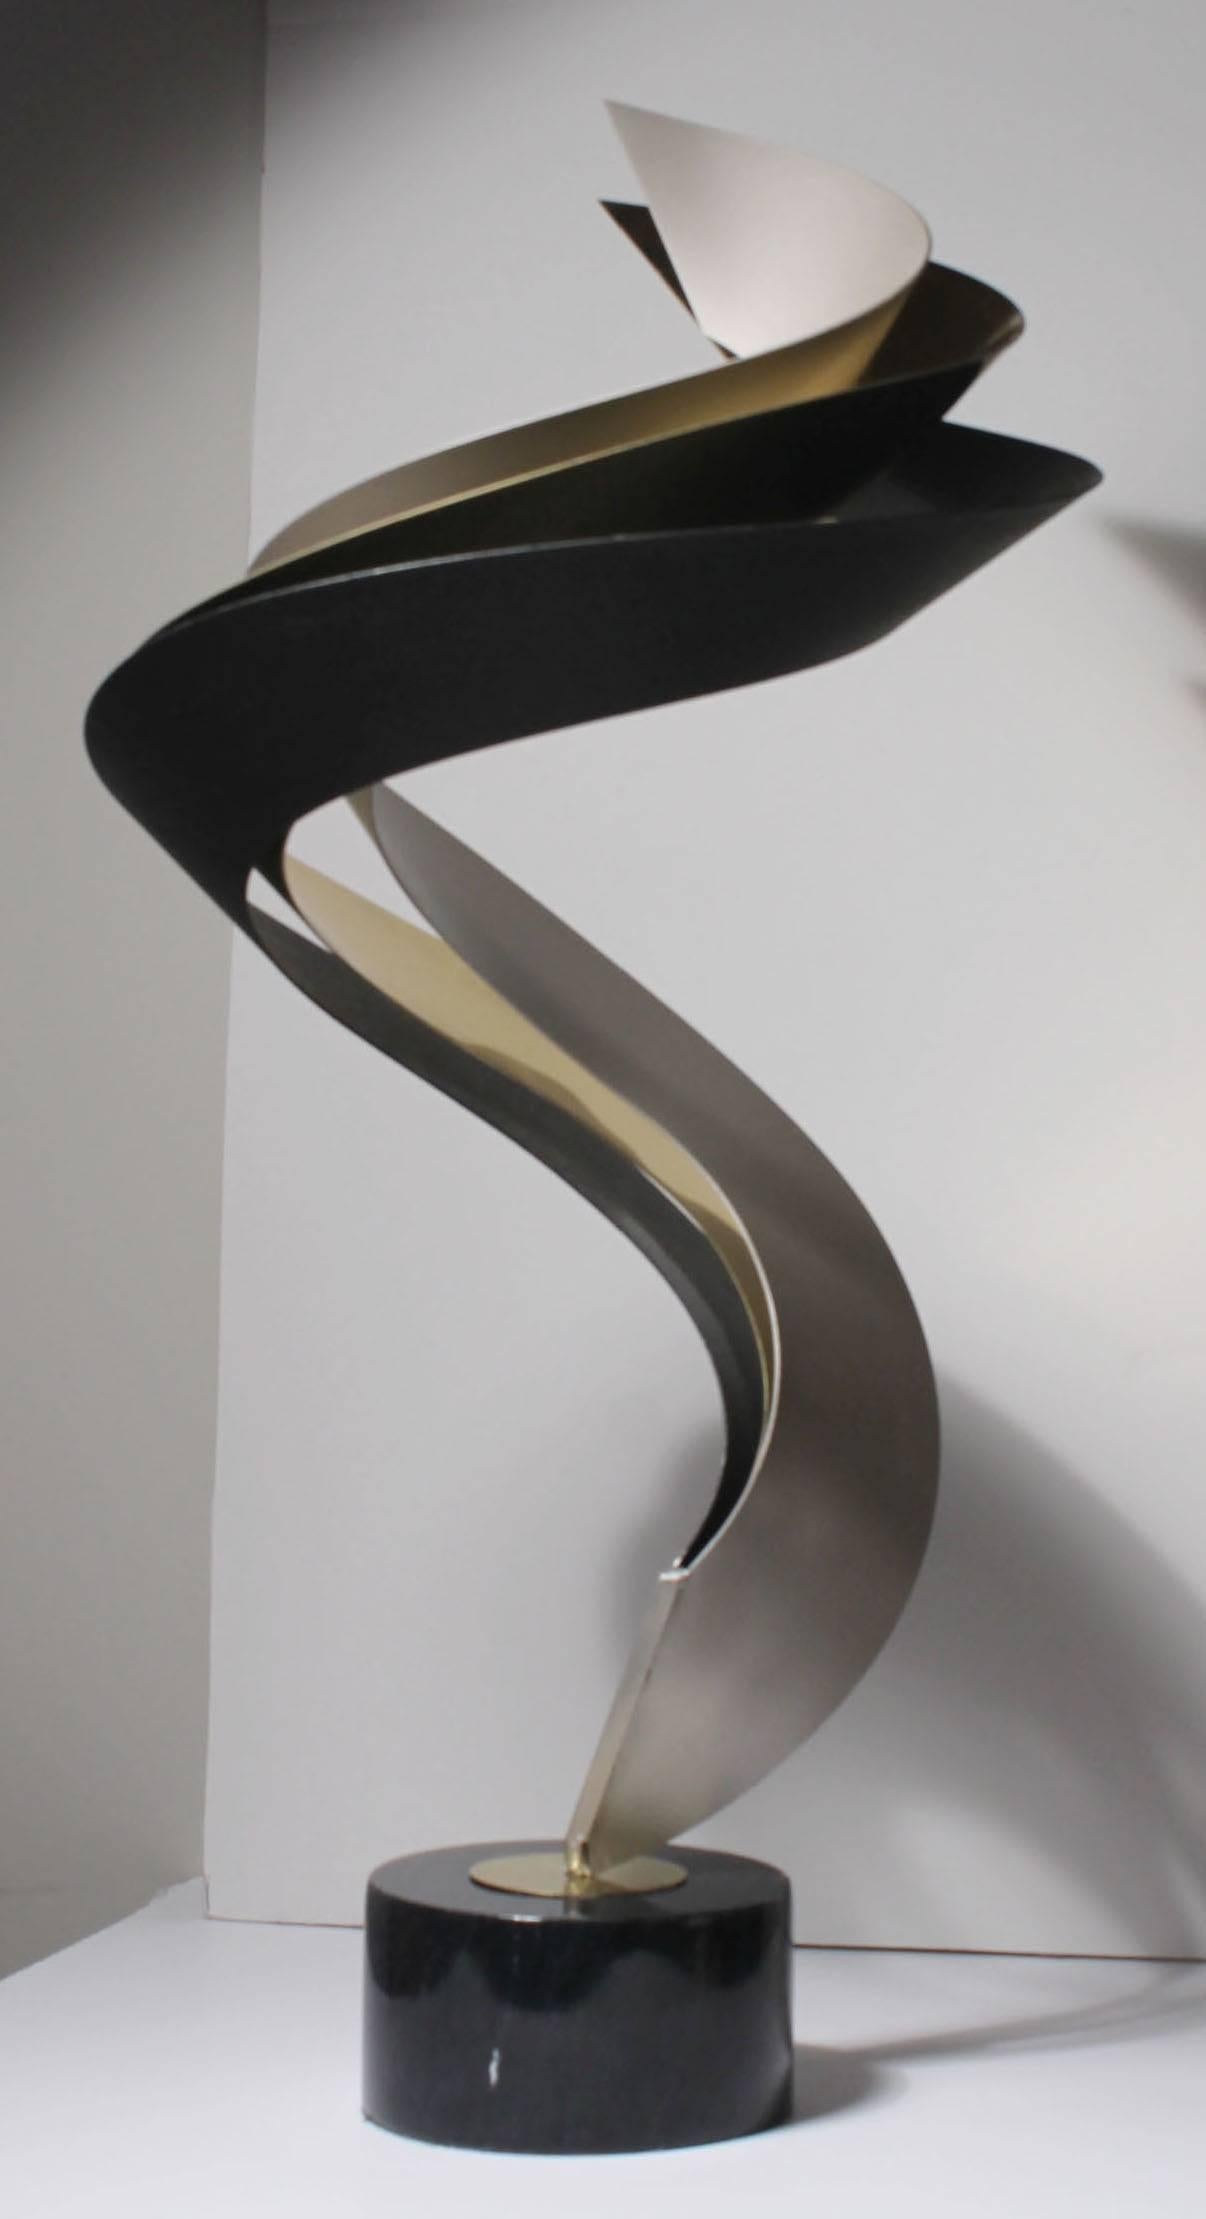 Elegante Tischkunstskulptur Jere
Besteht aus drei Metalloberflächen. Schwarz, Messing und mattes Silber.
Sockel aus Marmor.
Signiert und datiert (1993) auf dem Sockel.

Die Abmessungen sind ungefähre Angaben, bitte bestätigen Sie, wenn Sie genaue